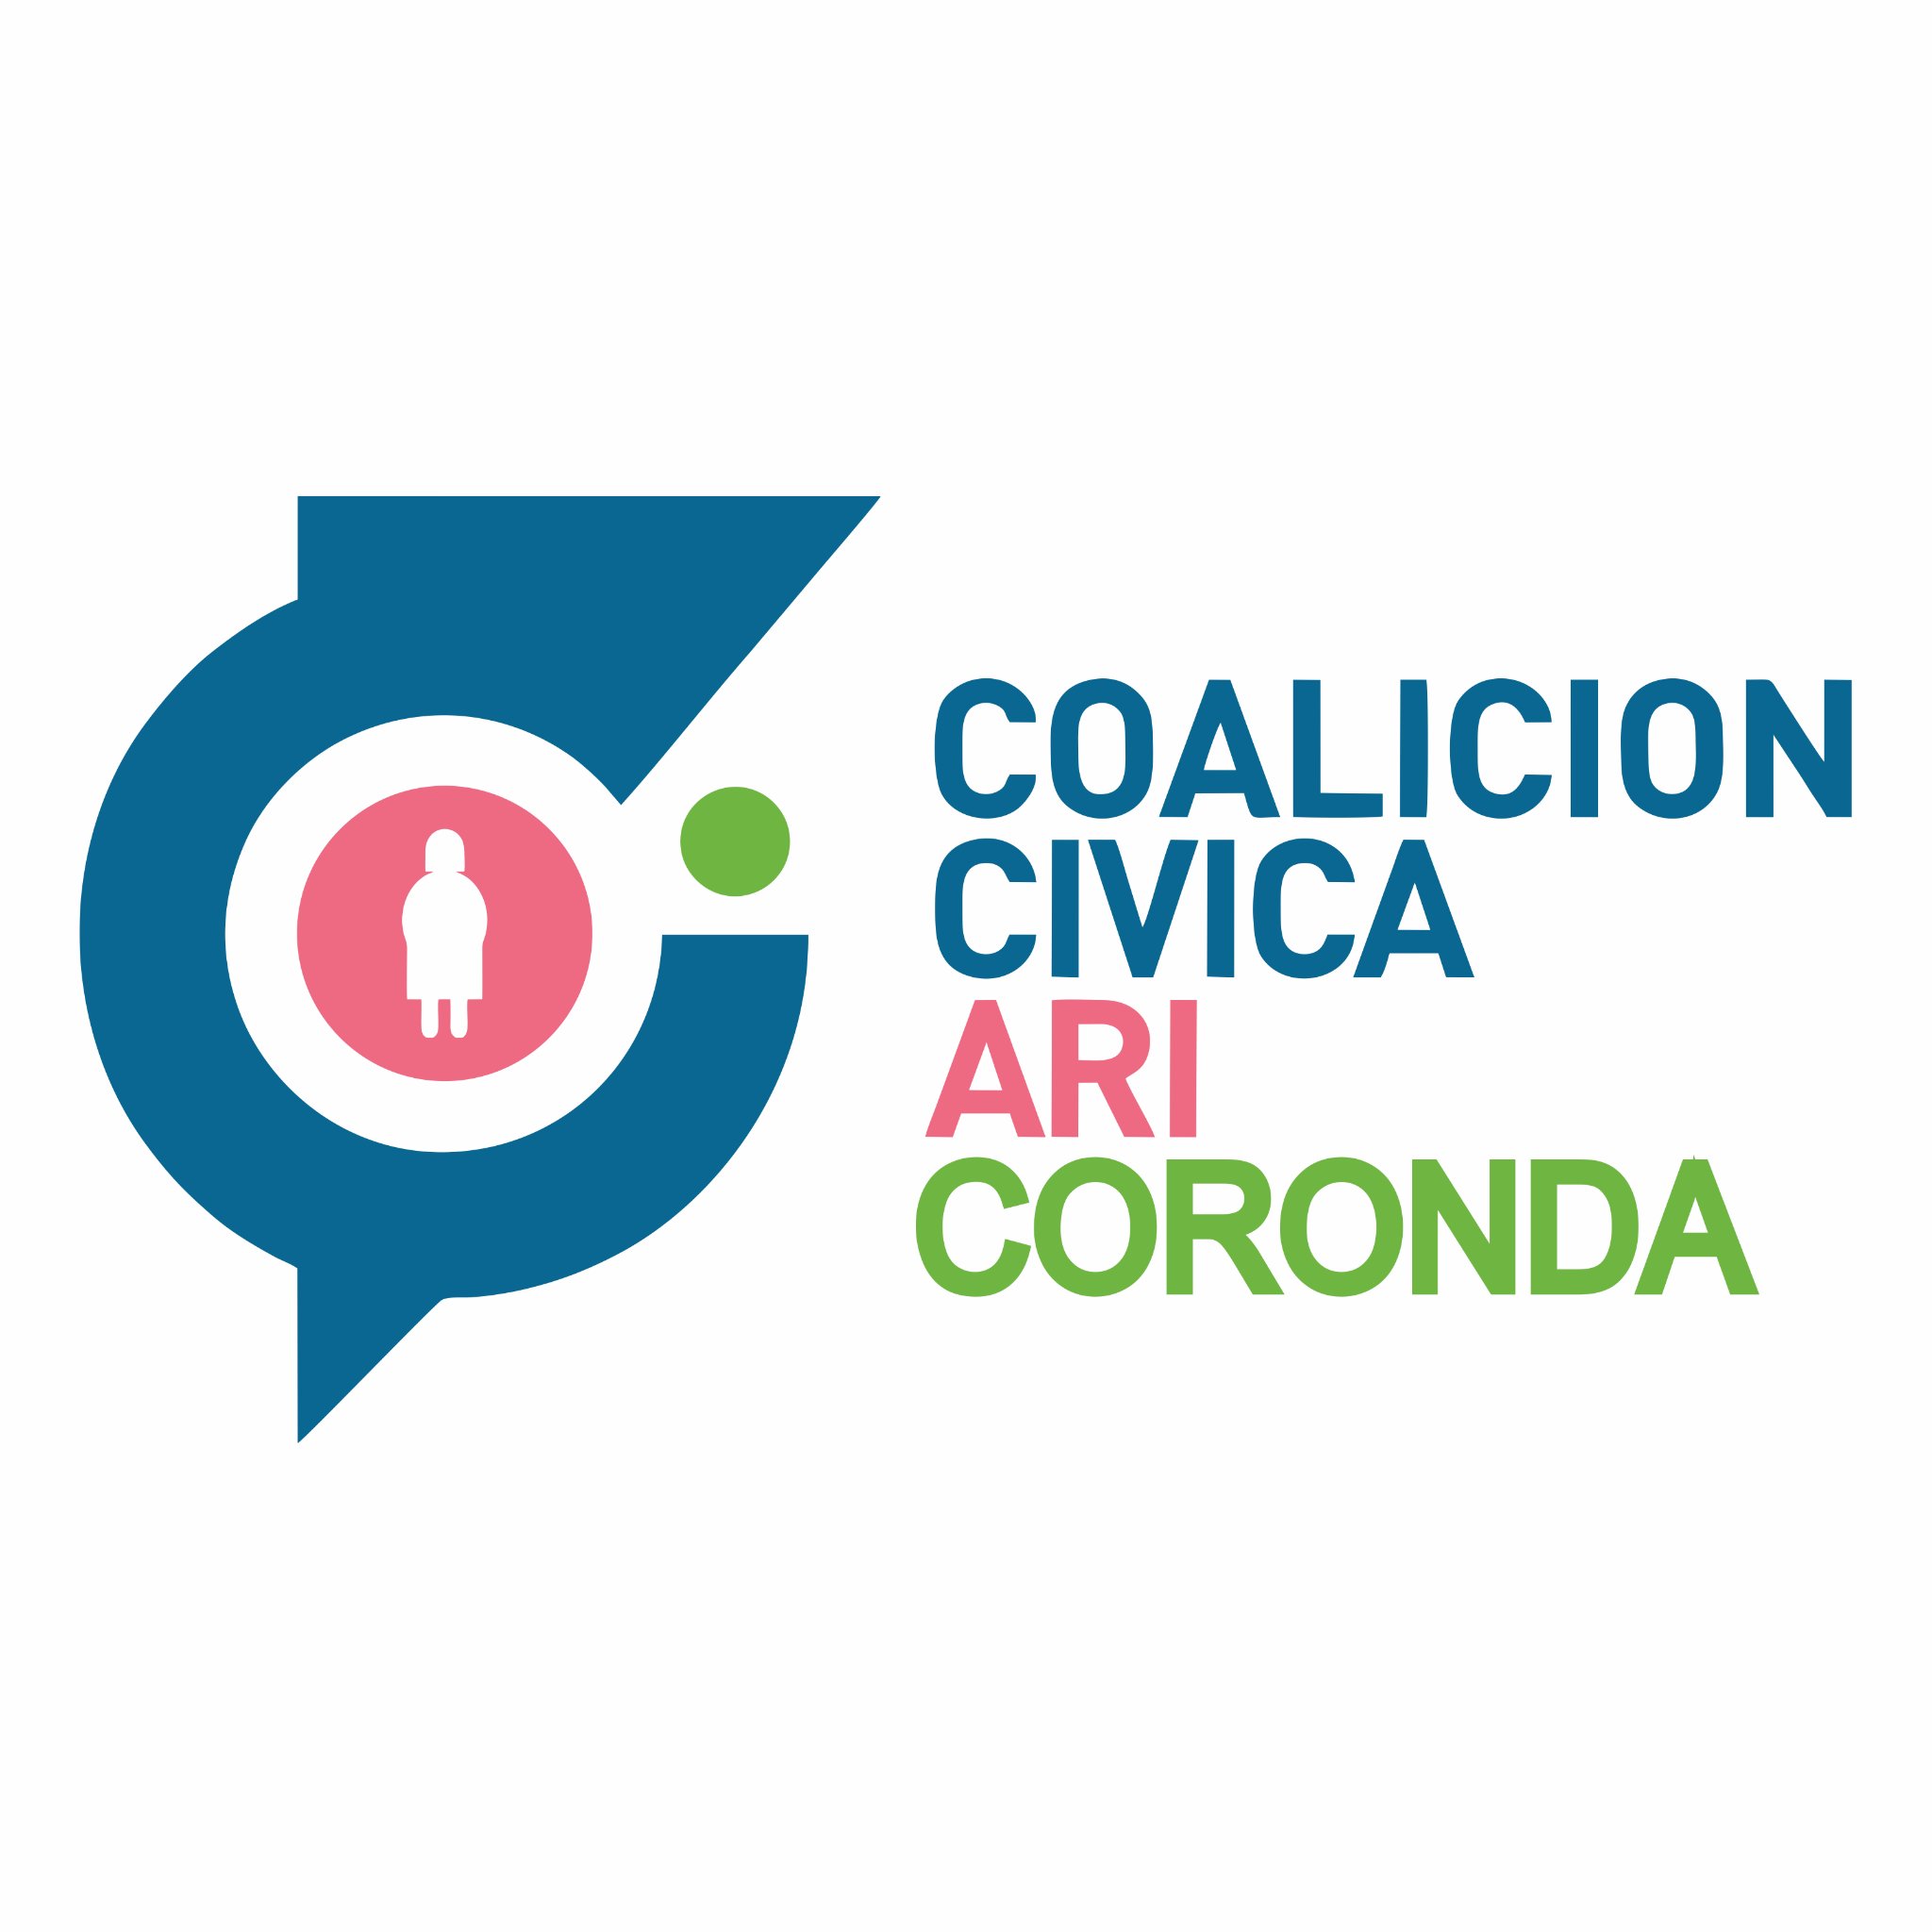 La @CcariCoronda presenta la lista #CambiaSantaFe a las elecciones PASO 16/7/23, en equipo con Creo Coronda y PDP Coronda.